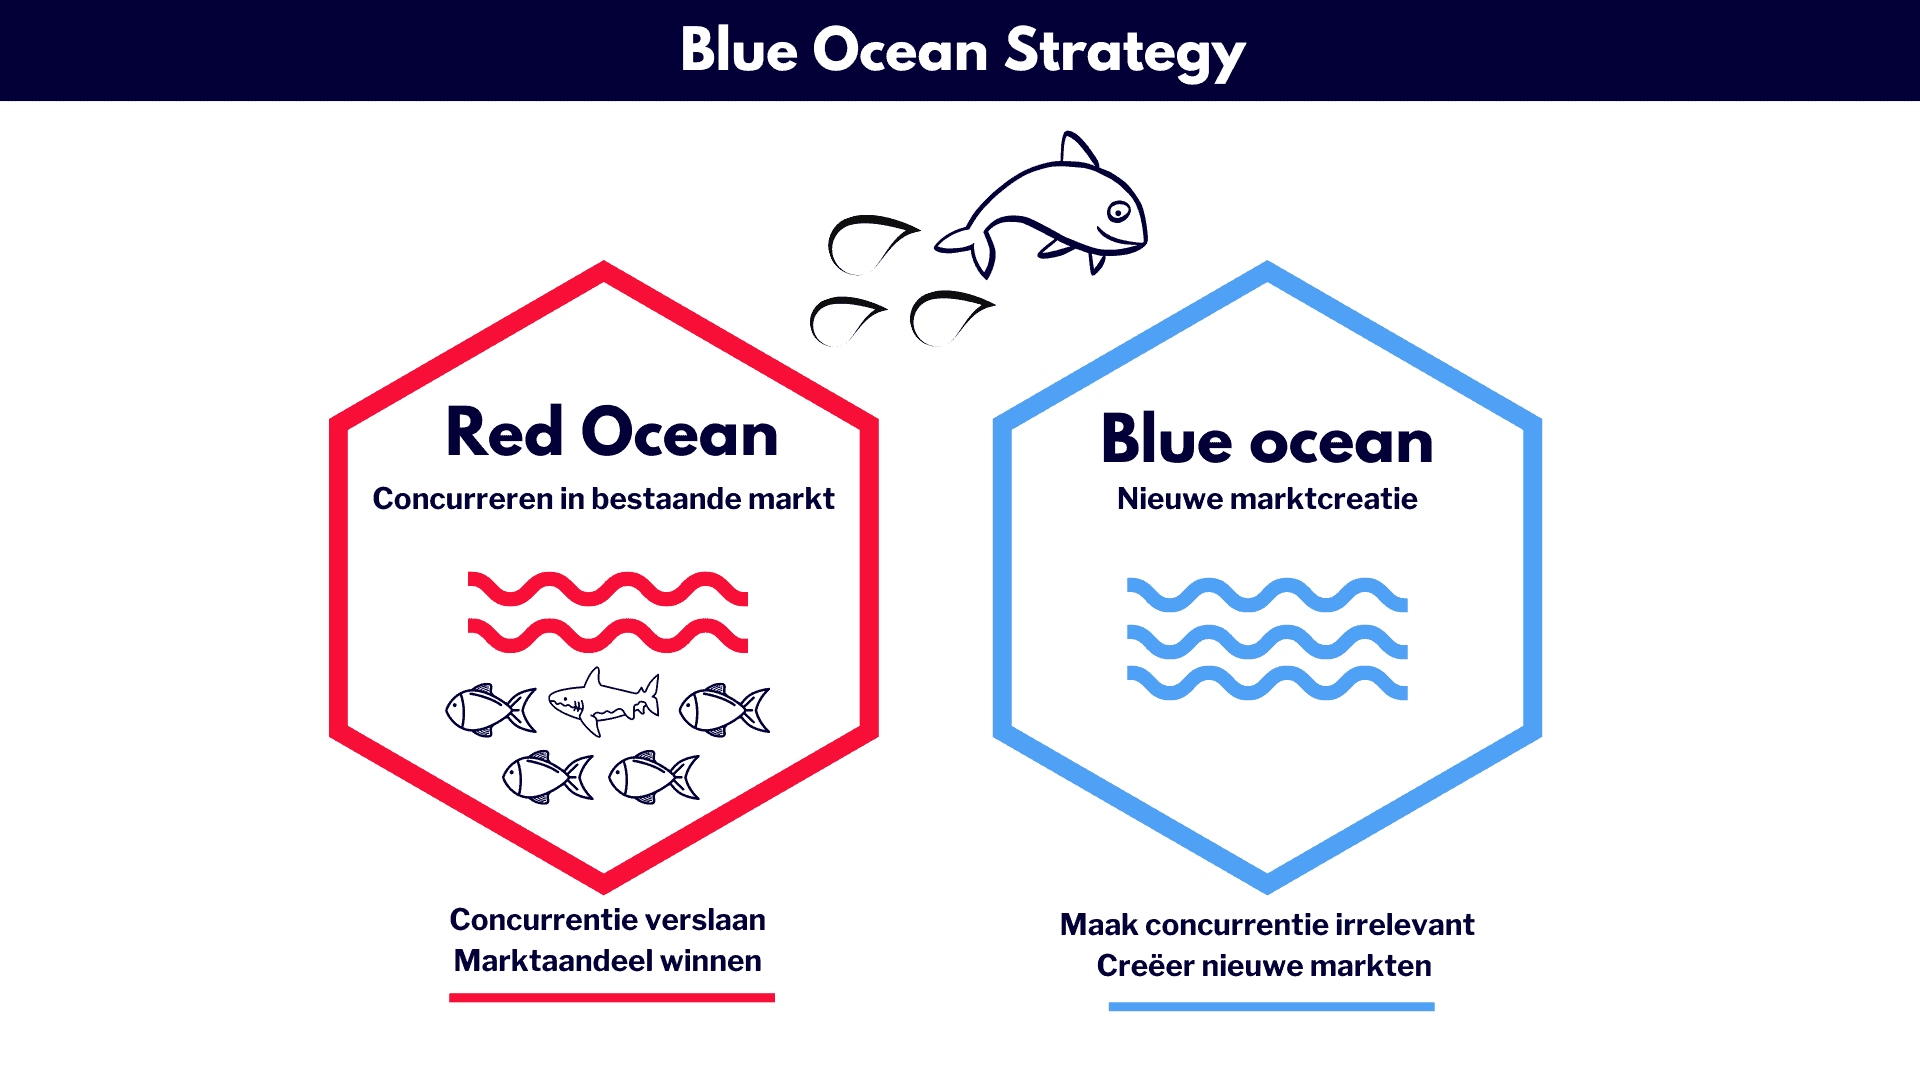 Blue Ocean Strategy